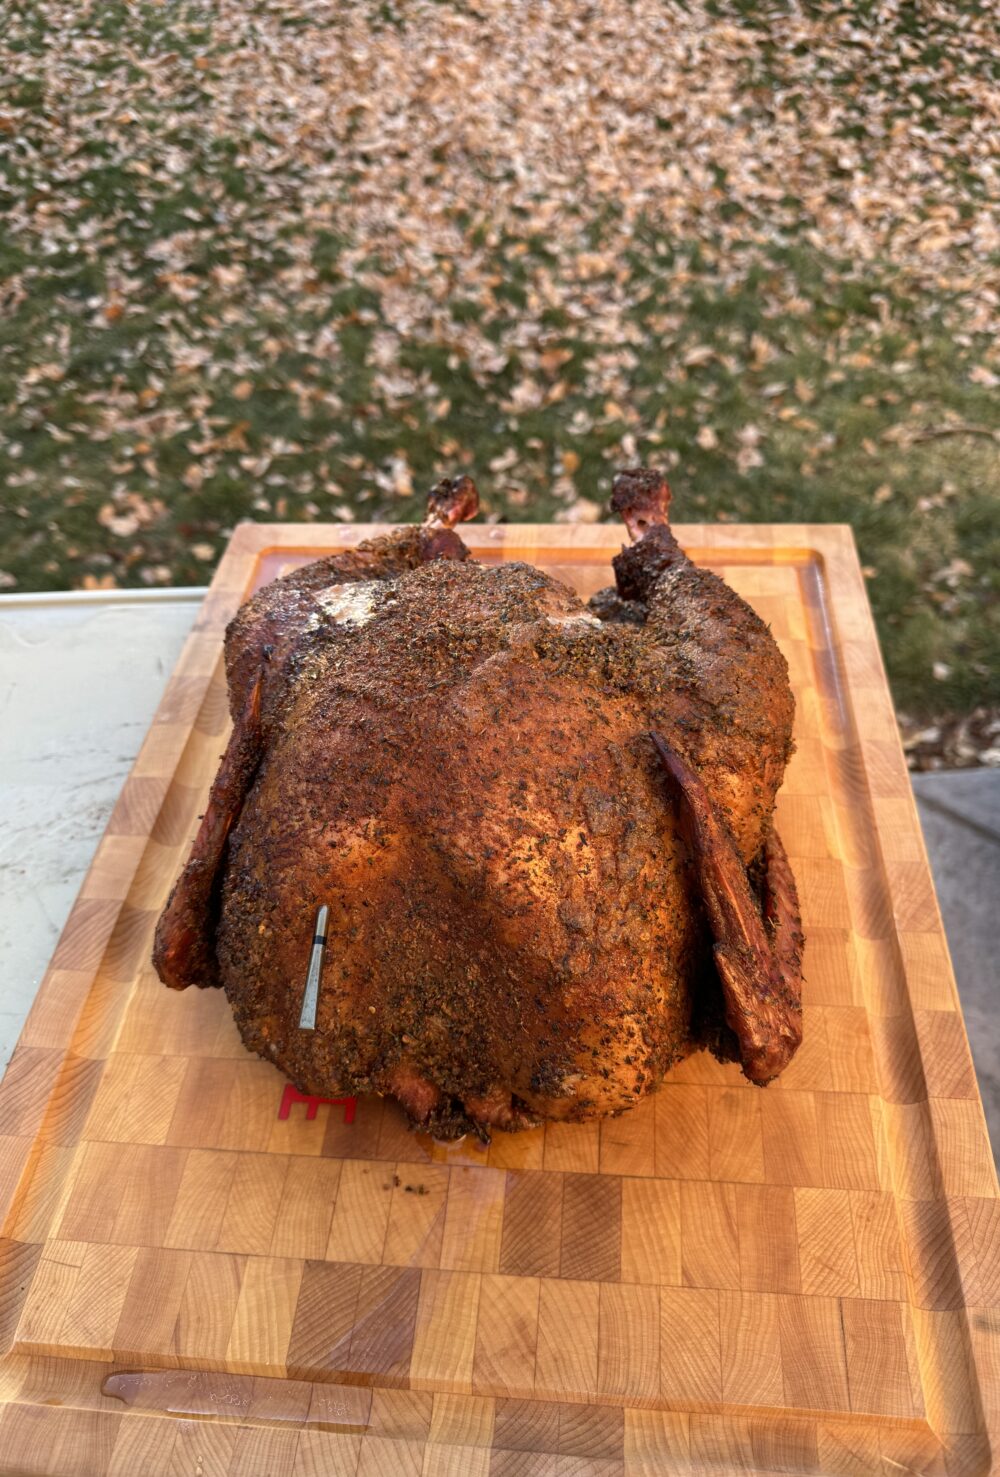 A smoked cajun turkey on a cutting board.